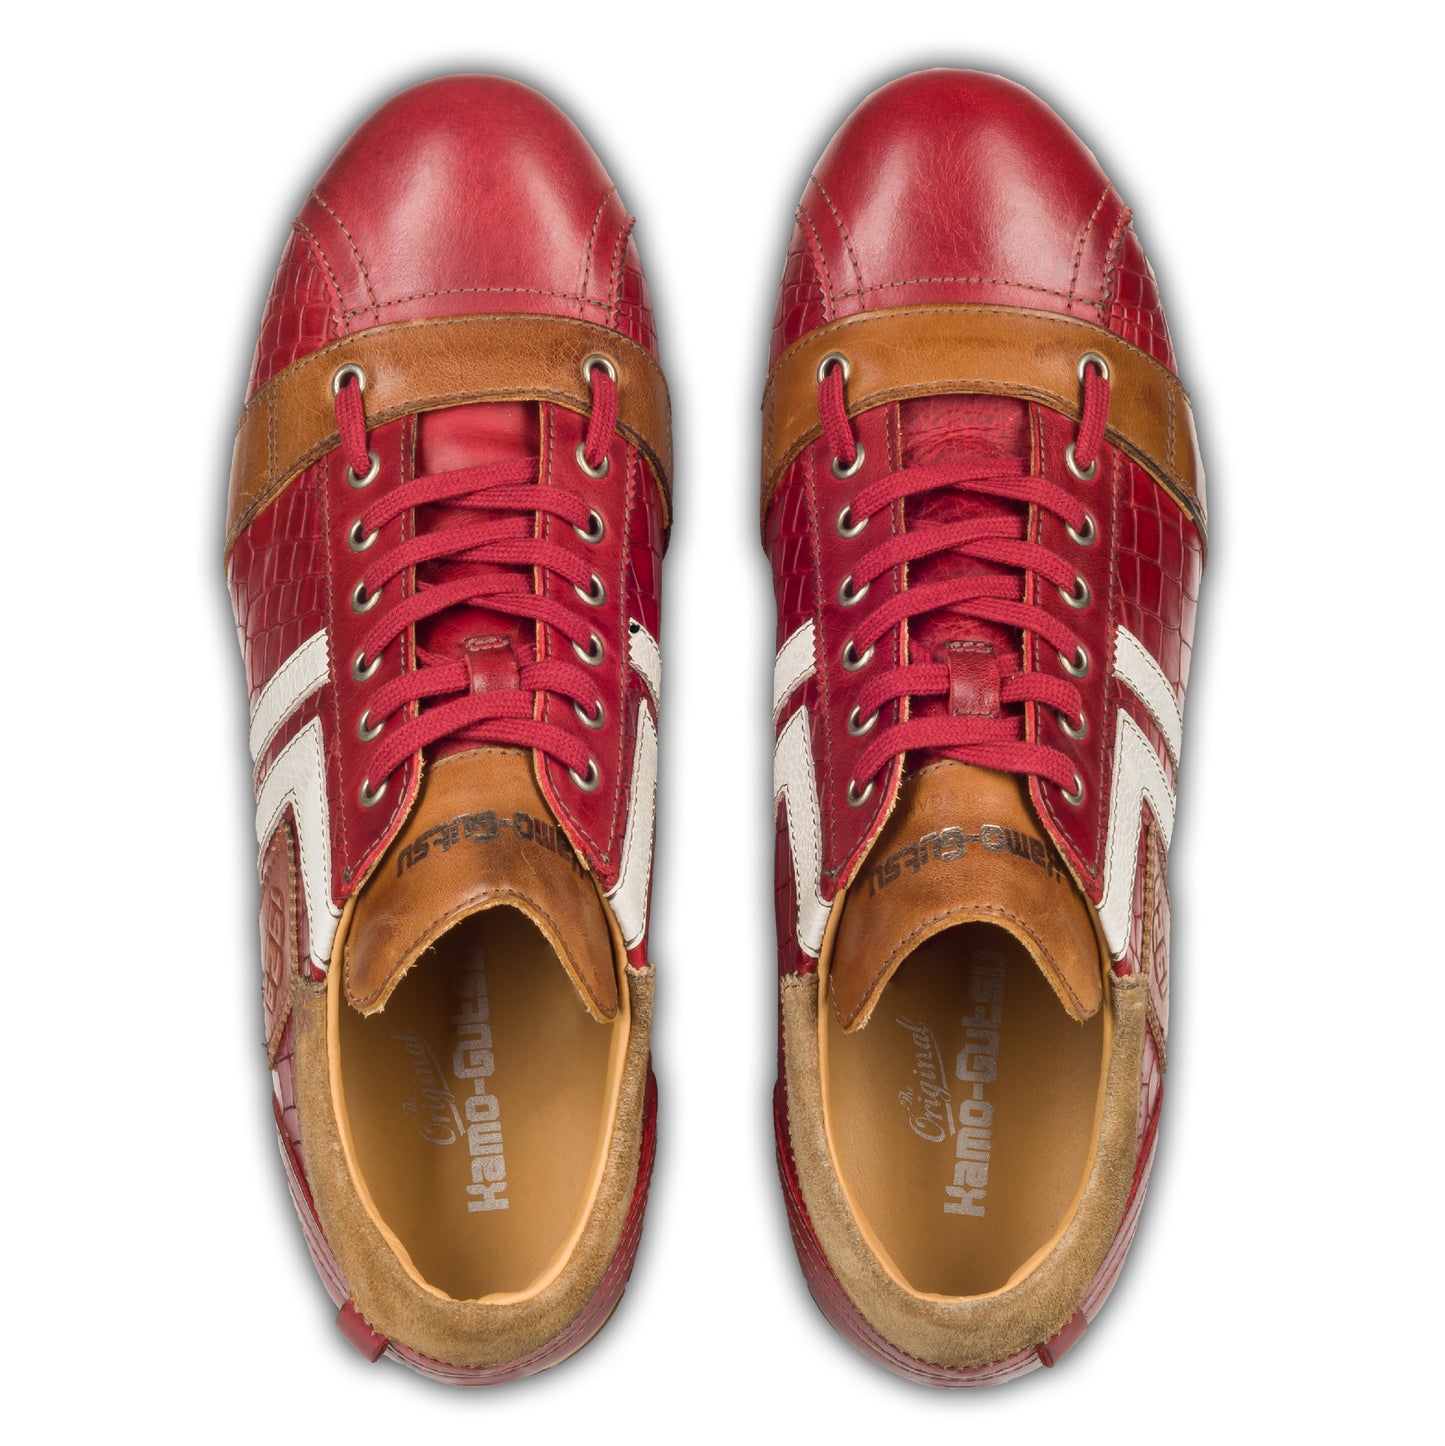 KAMO-GUTSU Herren Leder Sneaker, rot, Modell TIFO-030 croco rosso. Handgefertigt. Paarweise eigene Draufsicht aus angezogener Perspektive.